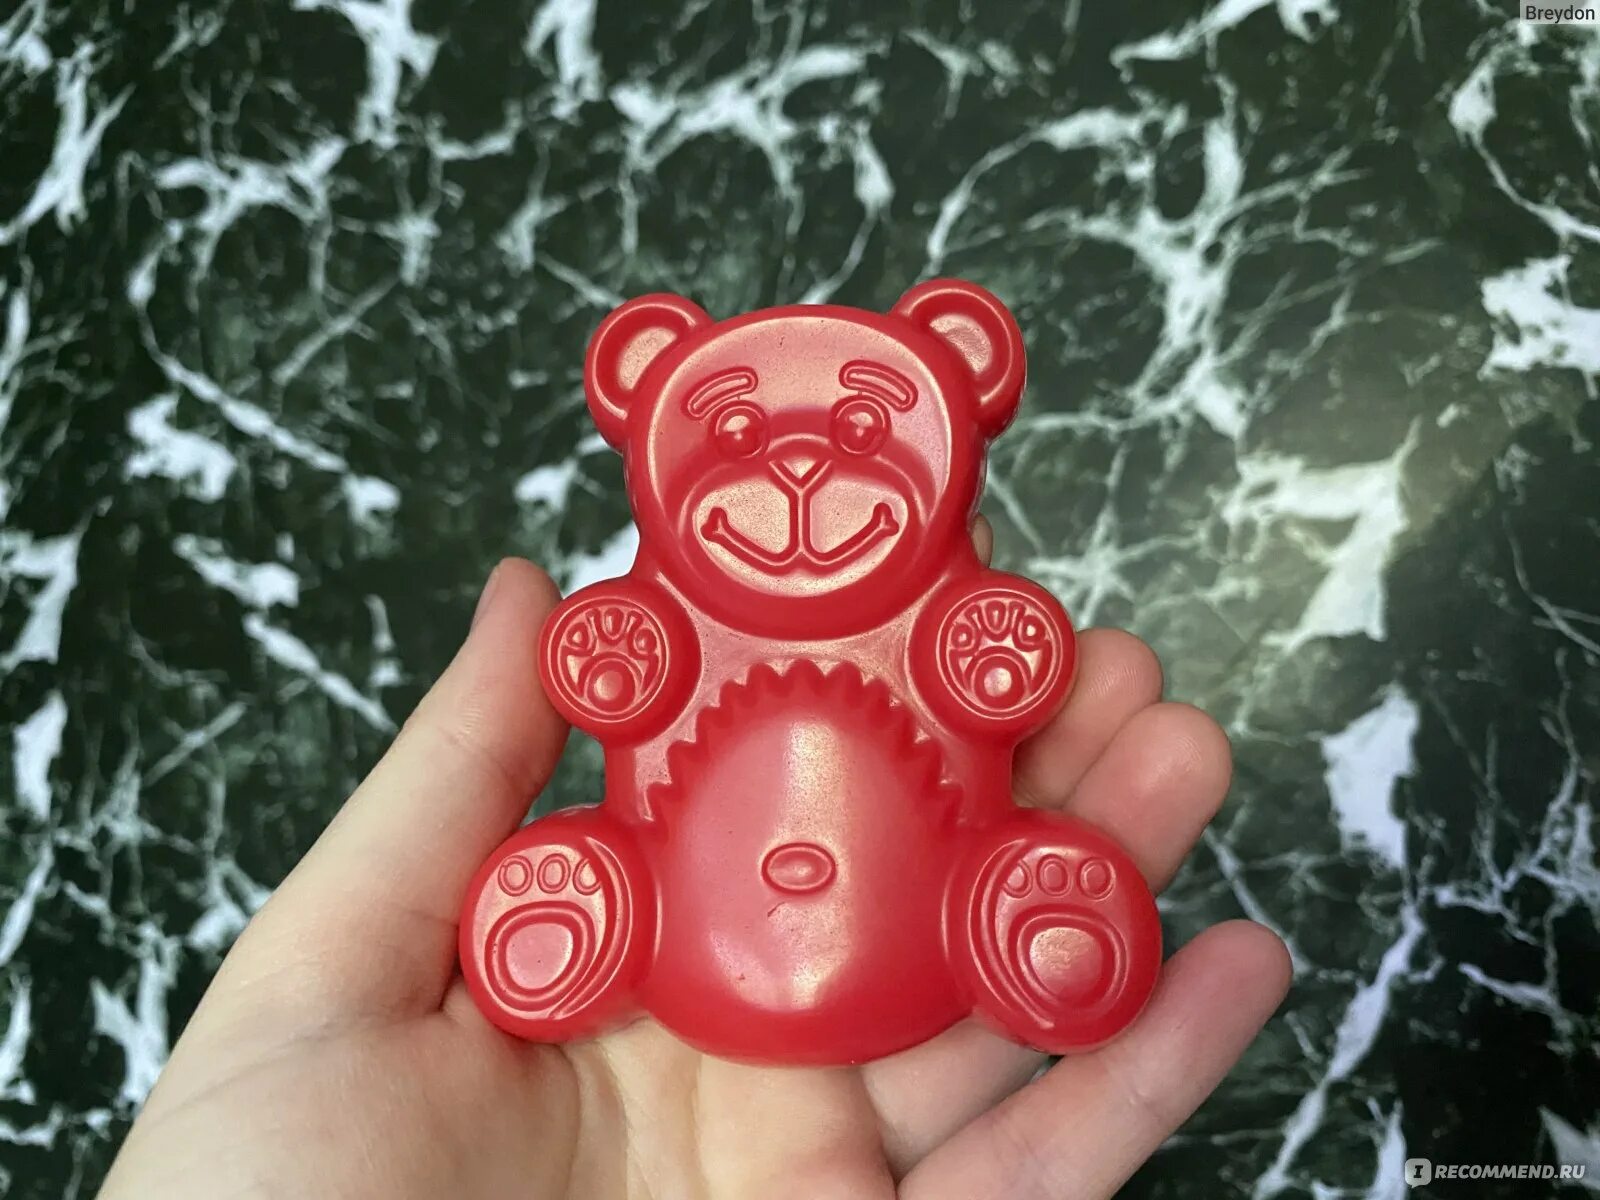 Валера 2020. ЖЕЛЕЙНЫЙ медведь. Розовые желейные медведи. Робот у Валеры ЖЕЛЕЙНОГО медведя. Медведь Redbox игрушка.